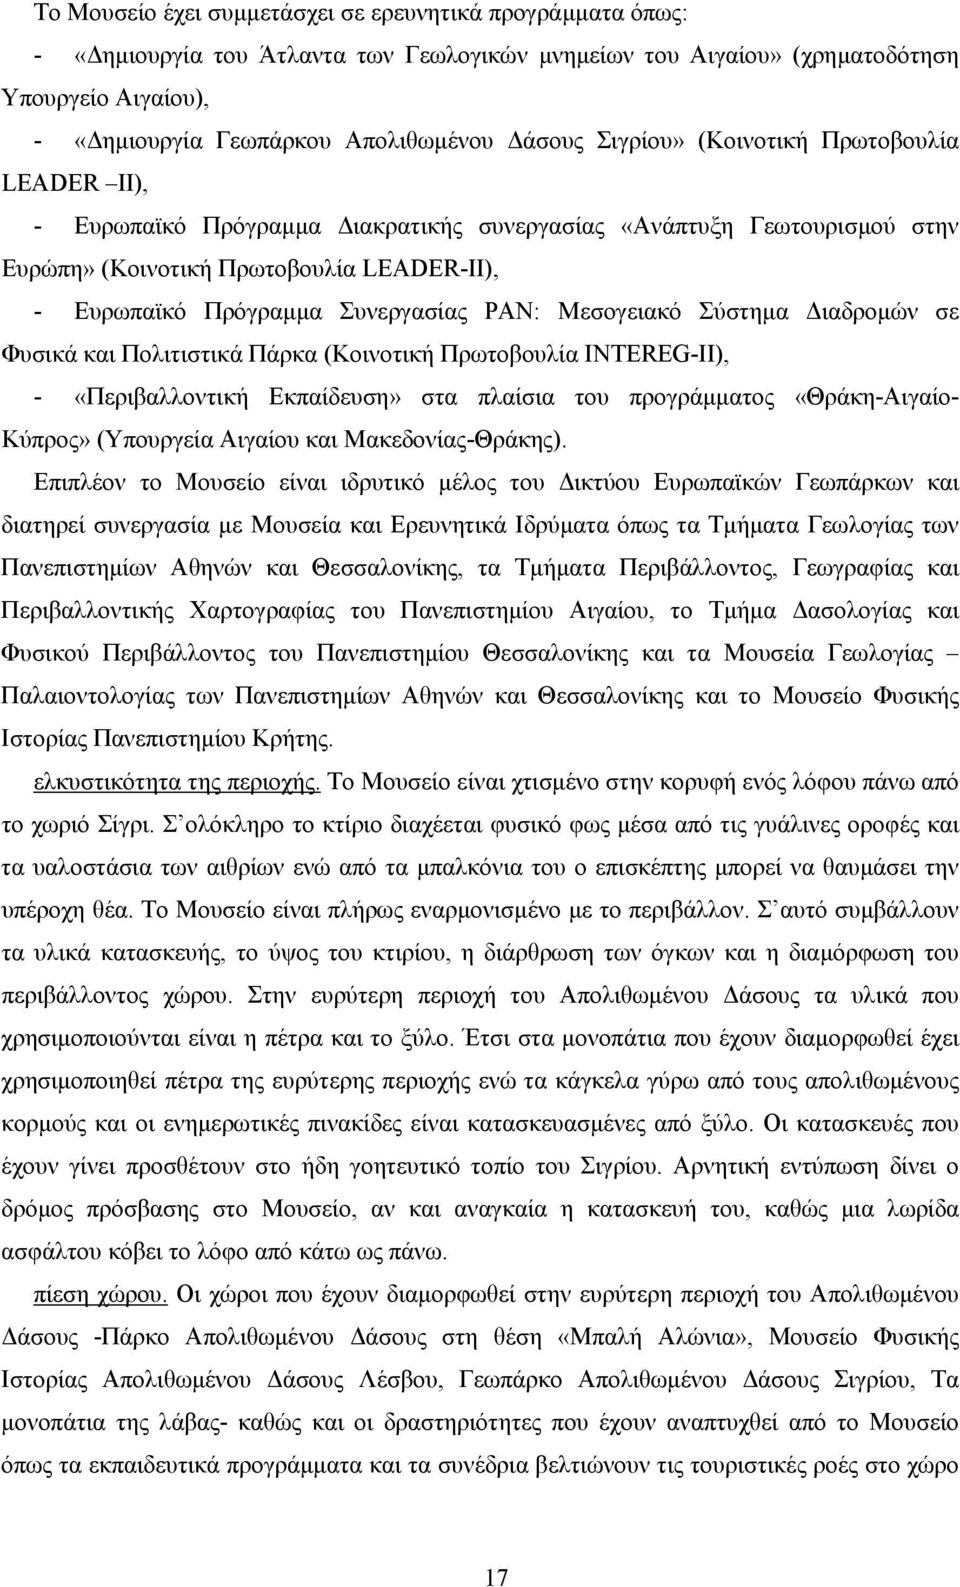 Μεσογειακό Σύστηµα ιαδροµών σε Φυσικά και Πολιτιστικά Πάρκα (Κοινοτική Πρωτοβουλία INTEREG-II), - «Περιβαλλοντική Εκπαίδευση» στα πλαίσια του προγράµµατος «Θράκη-Αιγαίο- Κύπρος» (Υπουργεία Αιγαίου